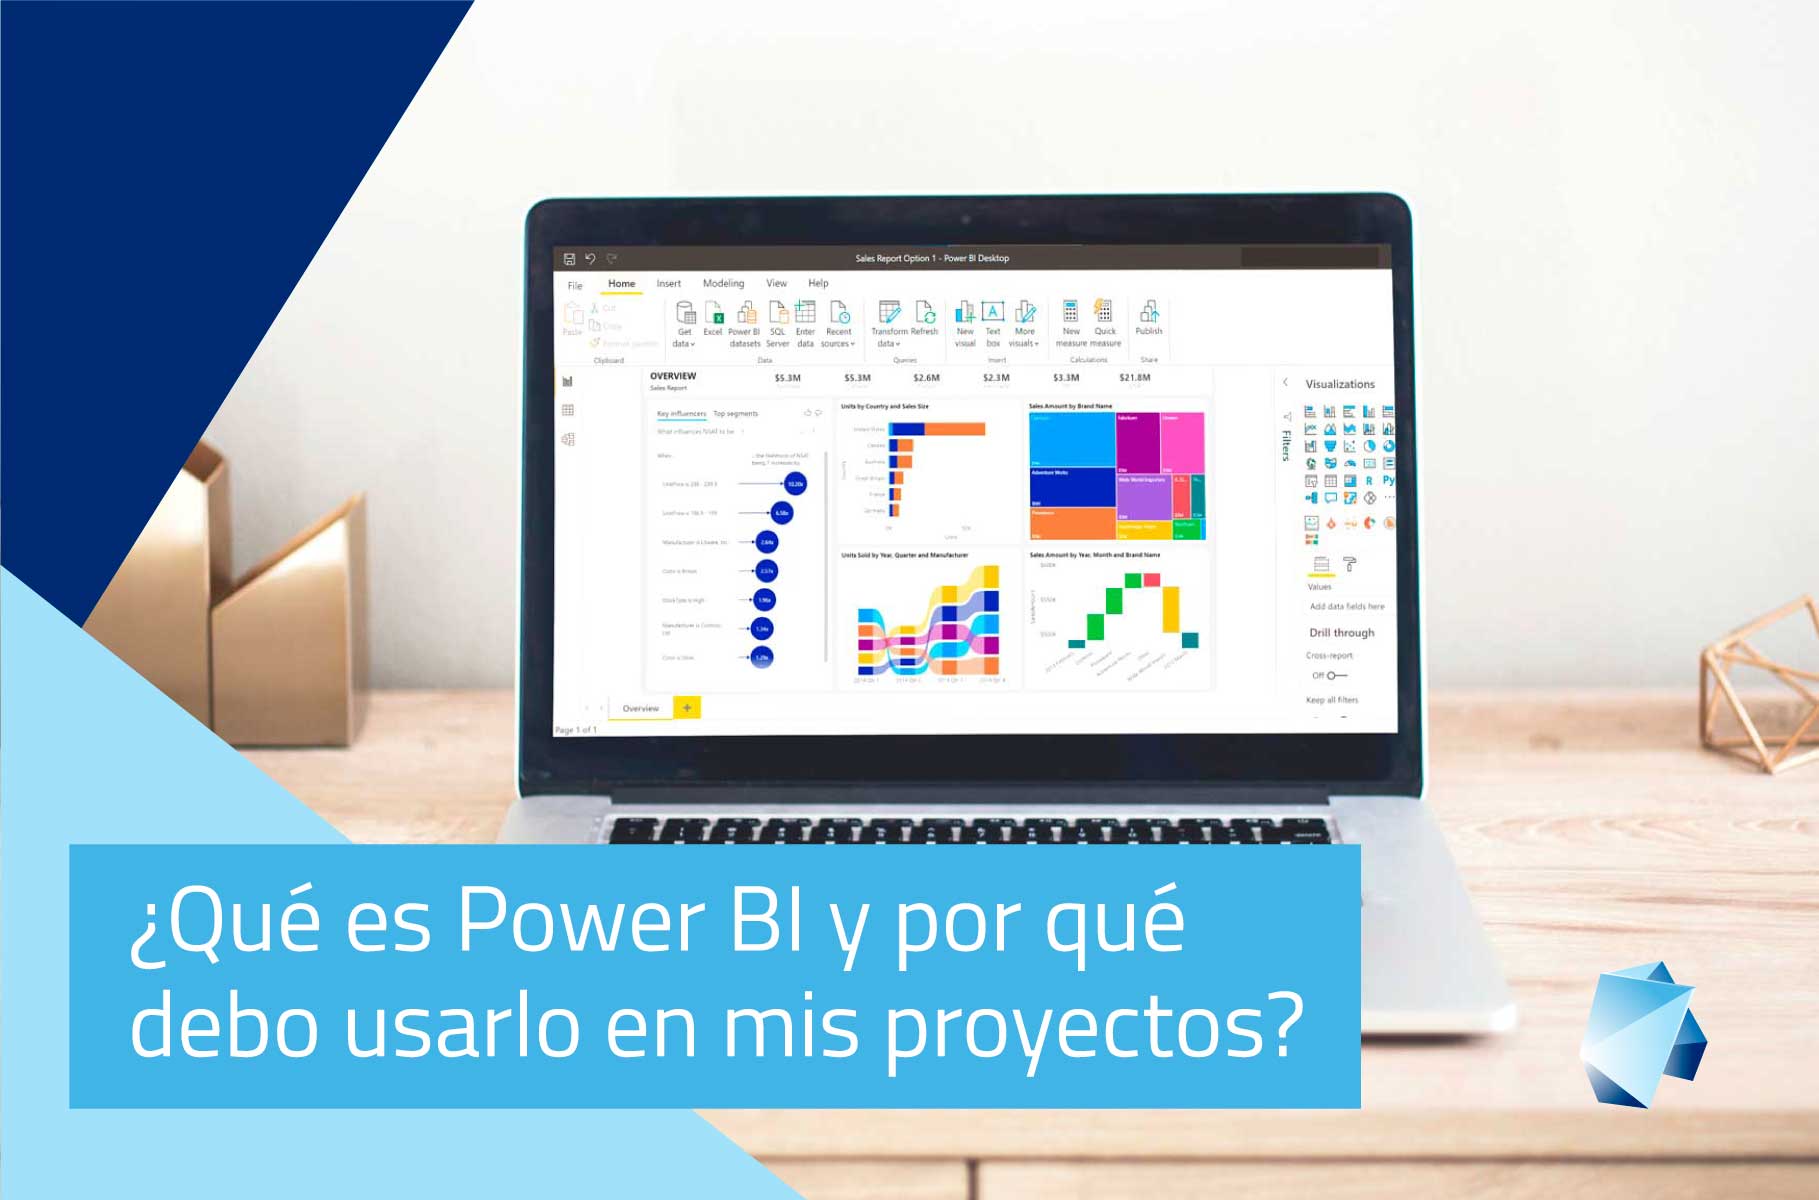 ¿Qué es Power BI y por qué debo usarlo en mis proyectos?